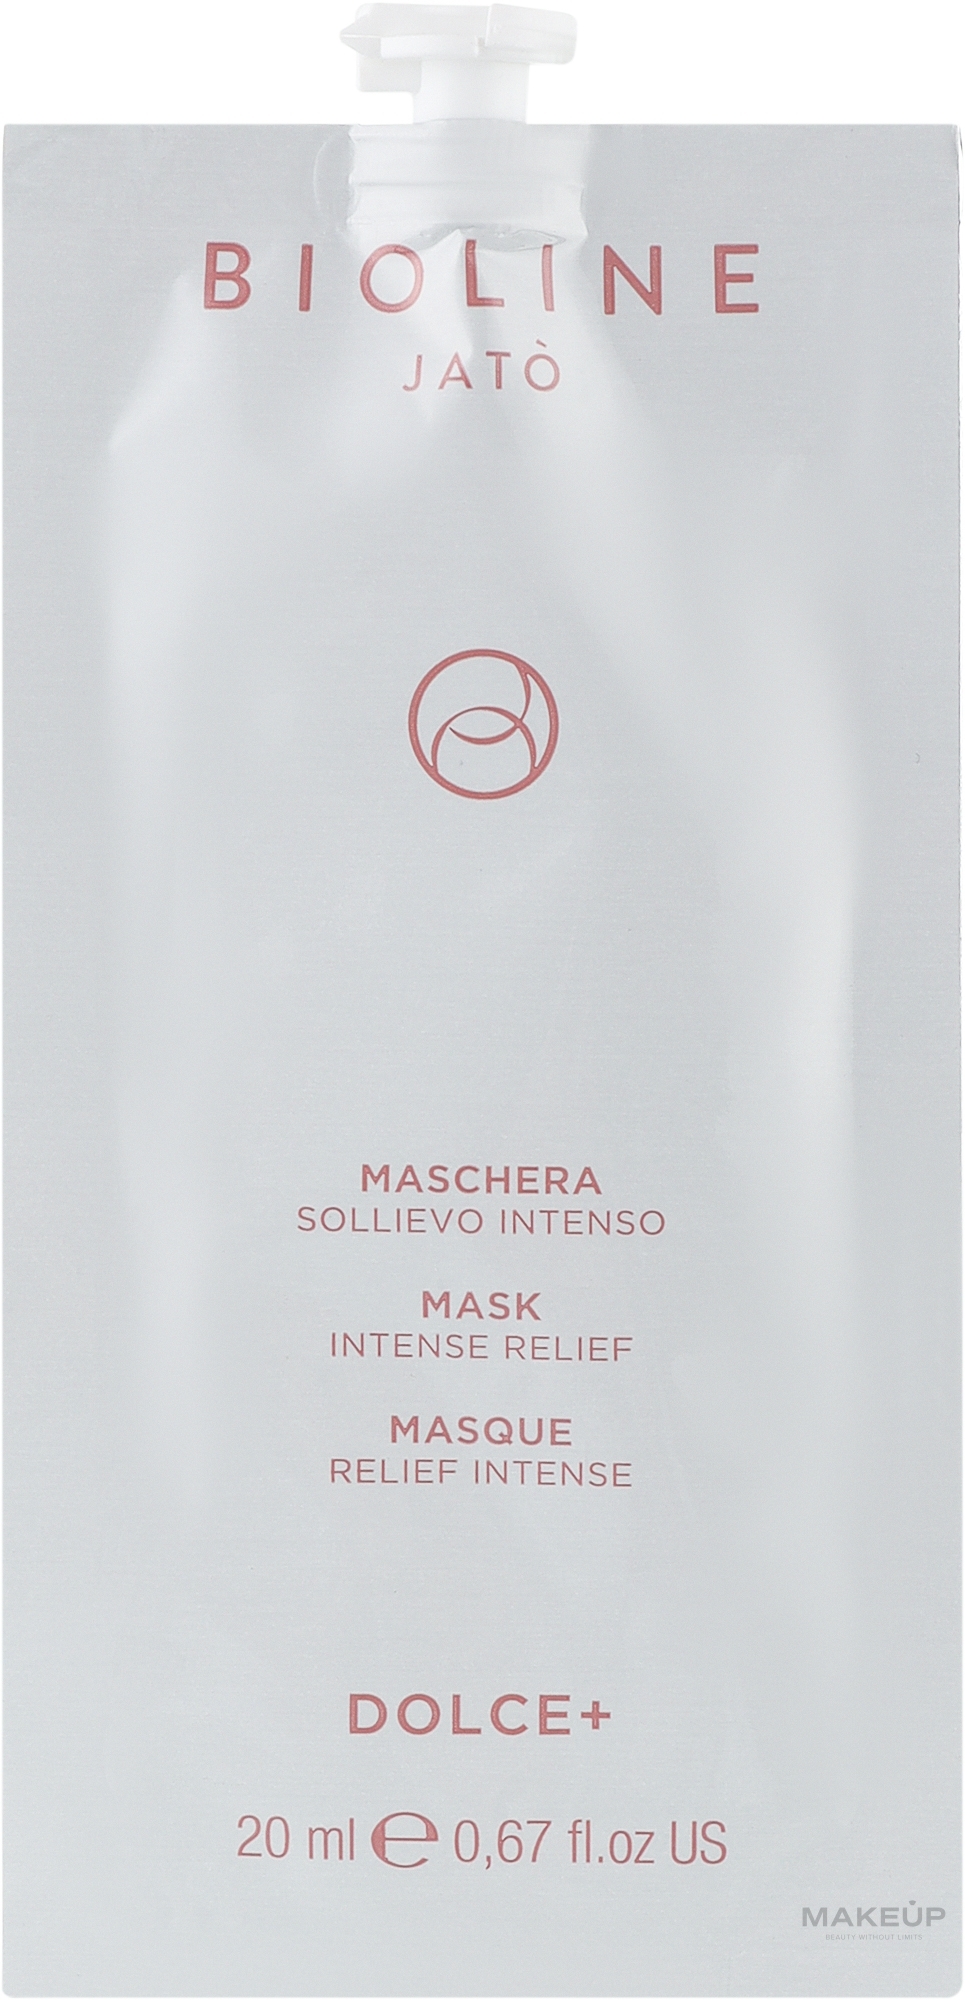 Інтенсивна пом'якшувальна маска для обличчя - Bioline Jato Dolce+ Mask Intense Relief — фото 20ml